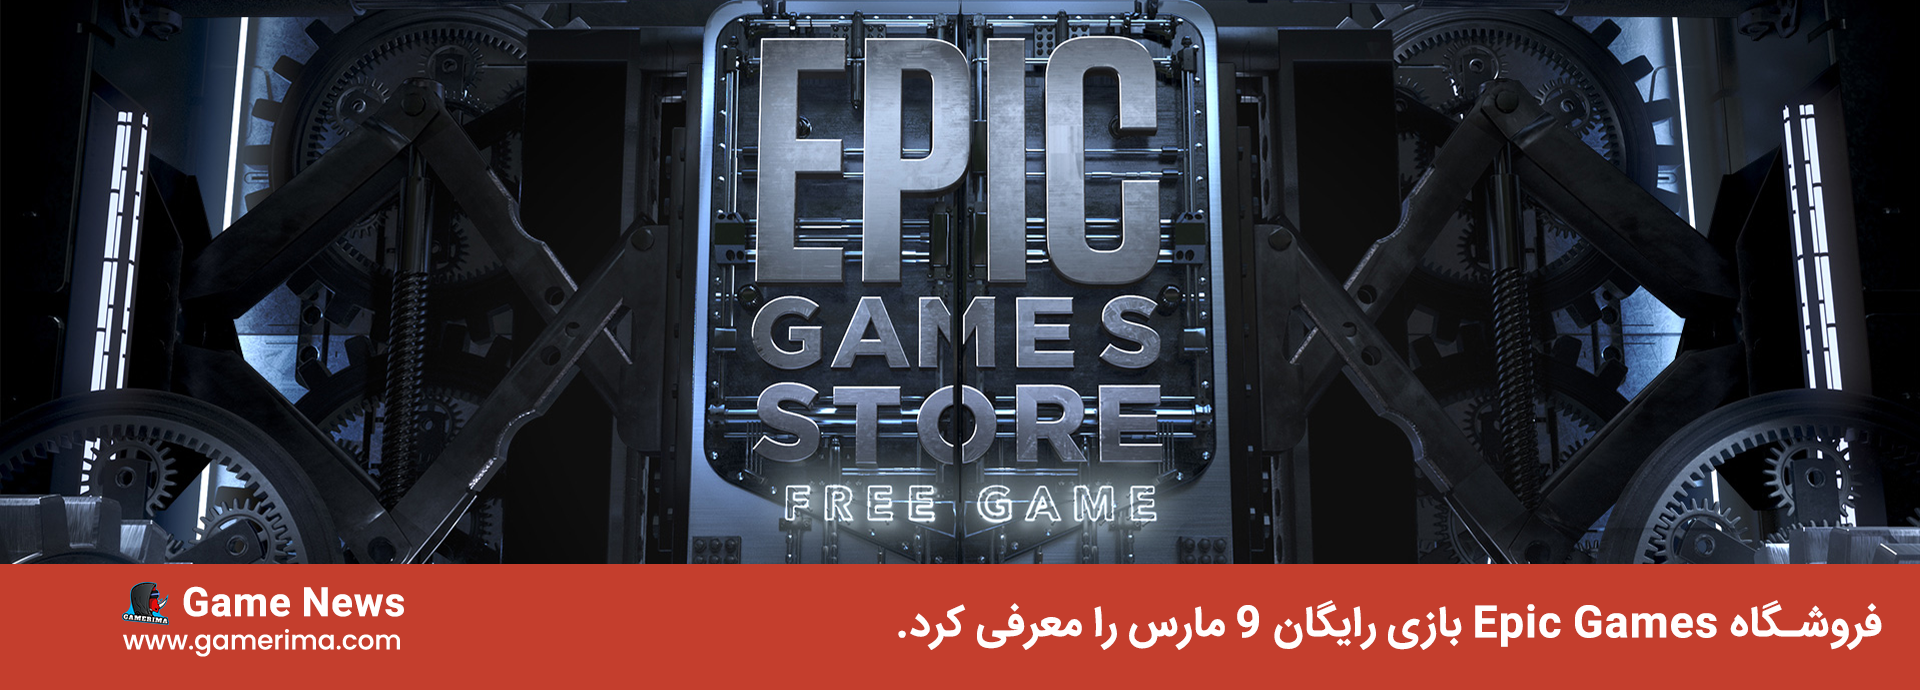 فروشگاه Epic Games بازی رایگان 9 مارس را معرفی کرد.